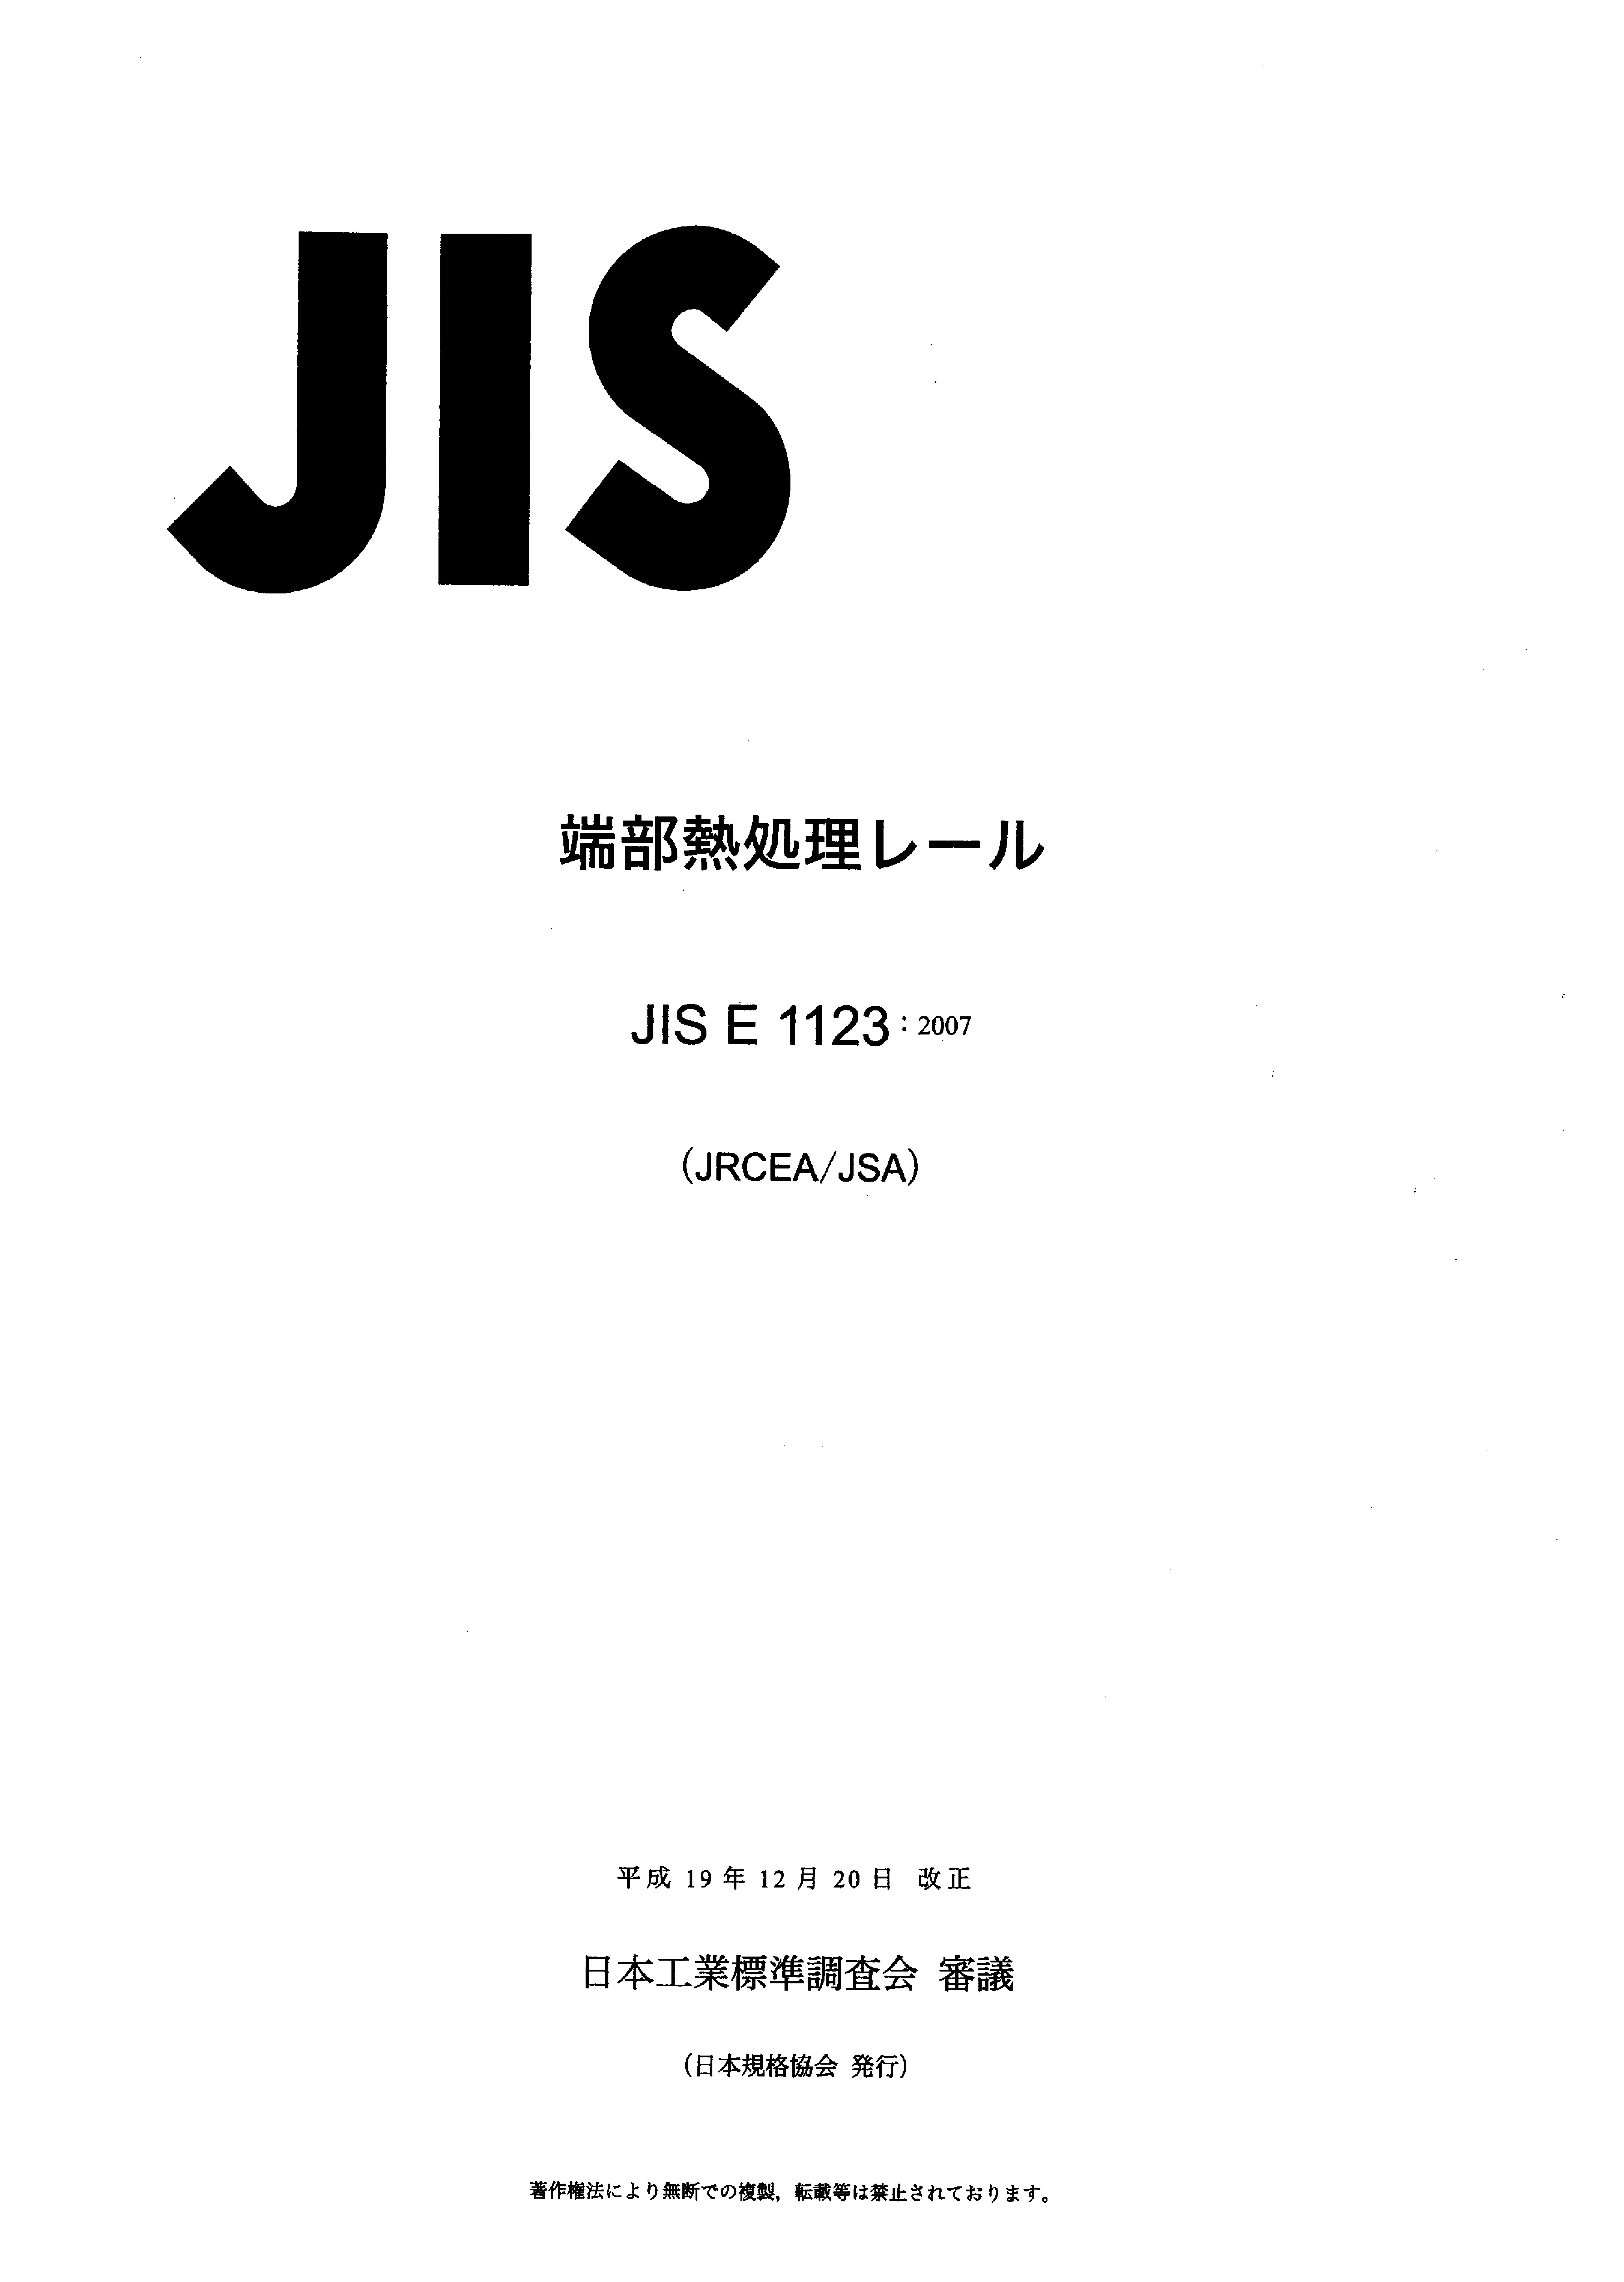 JIS E 1123:2007封面图